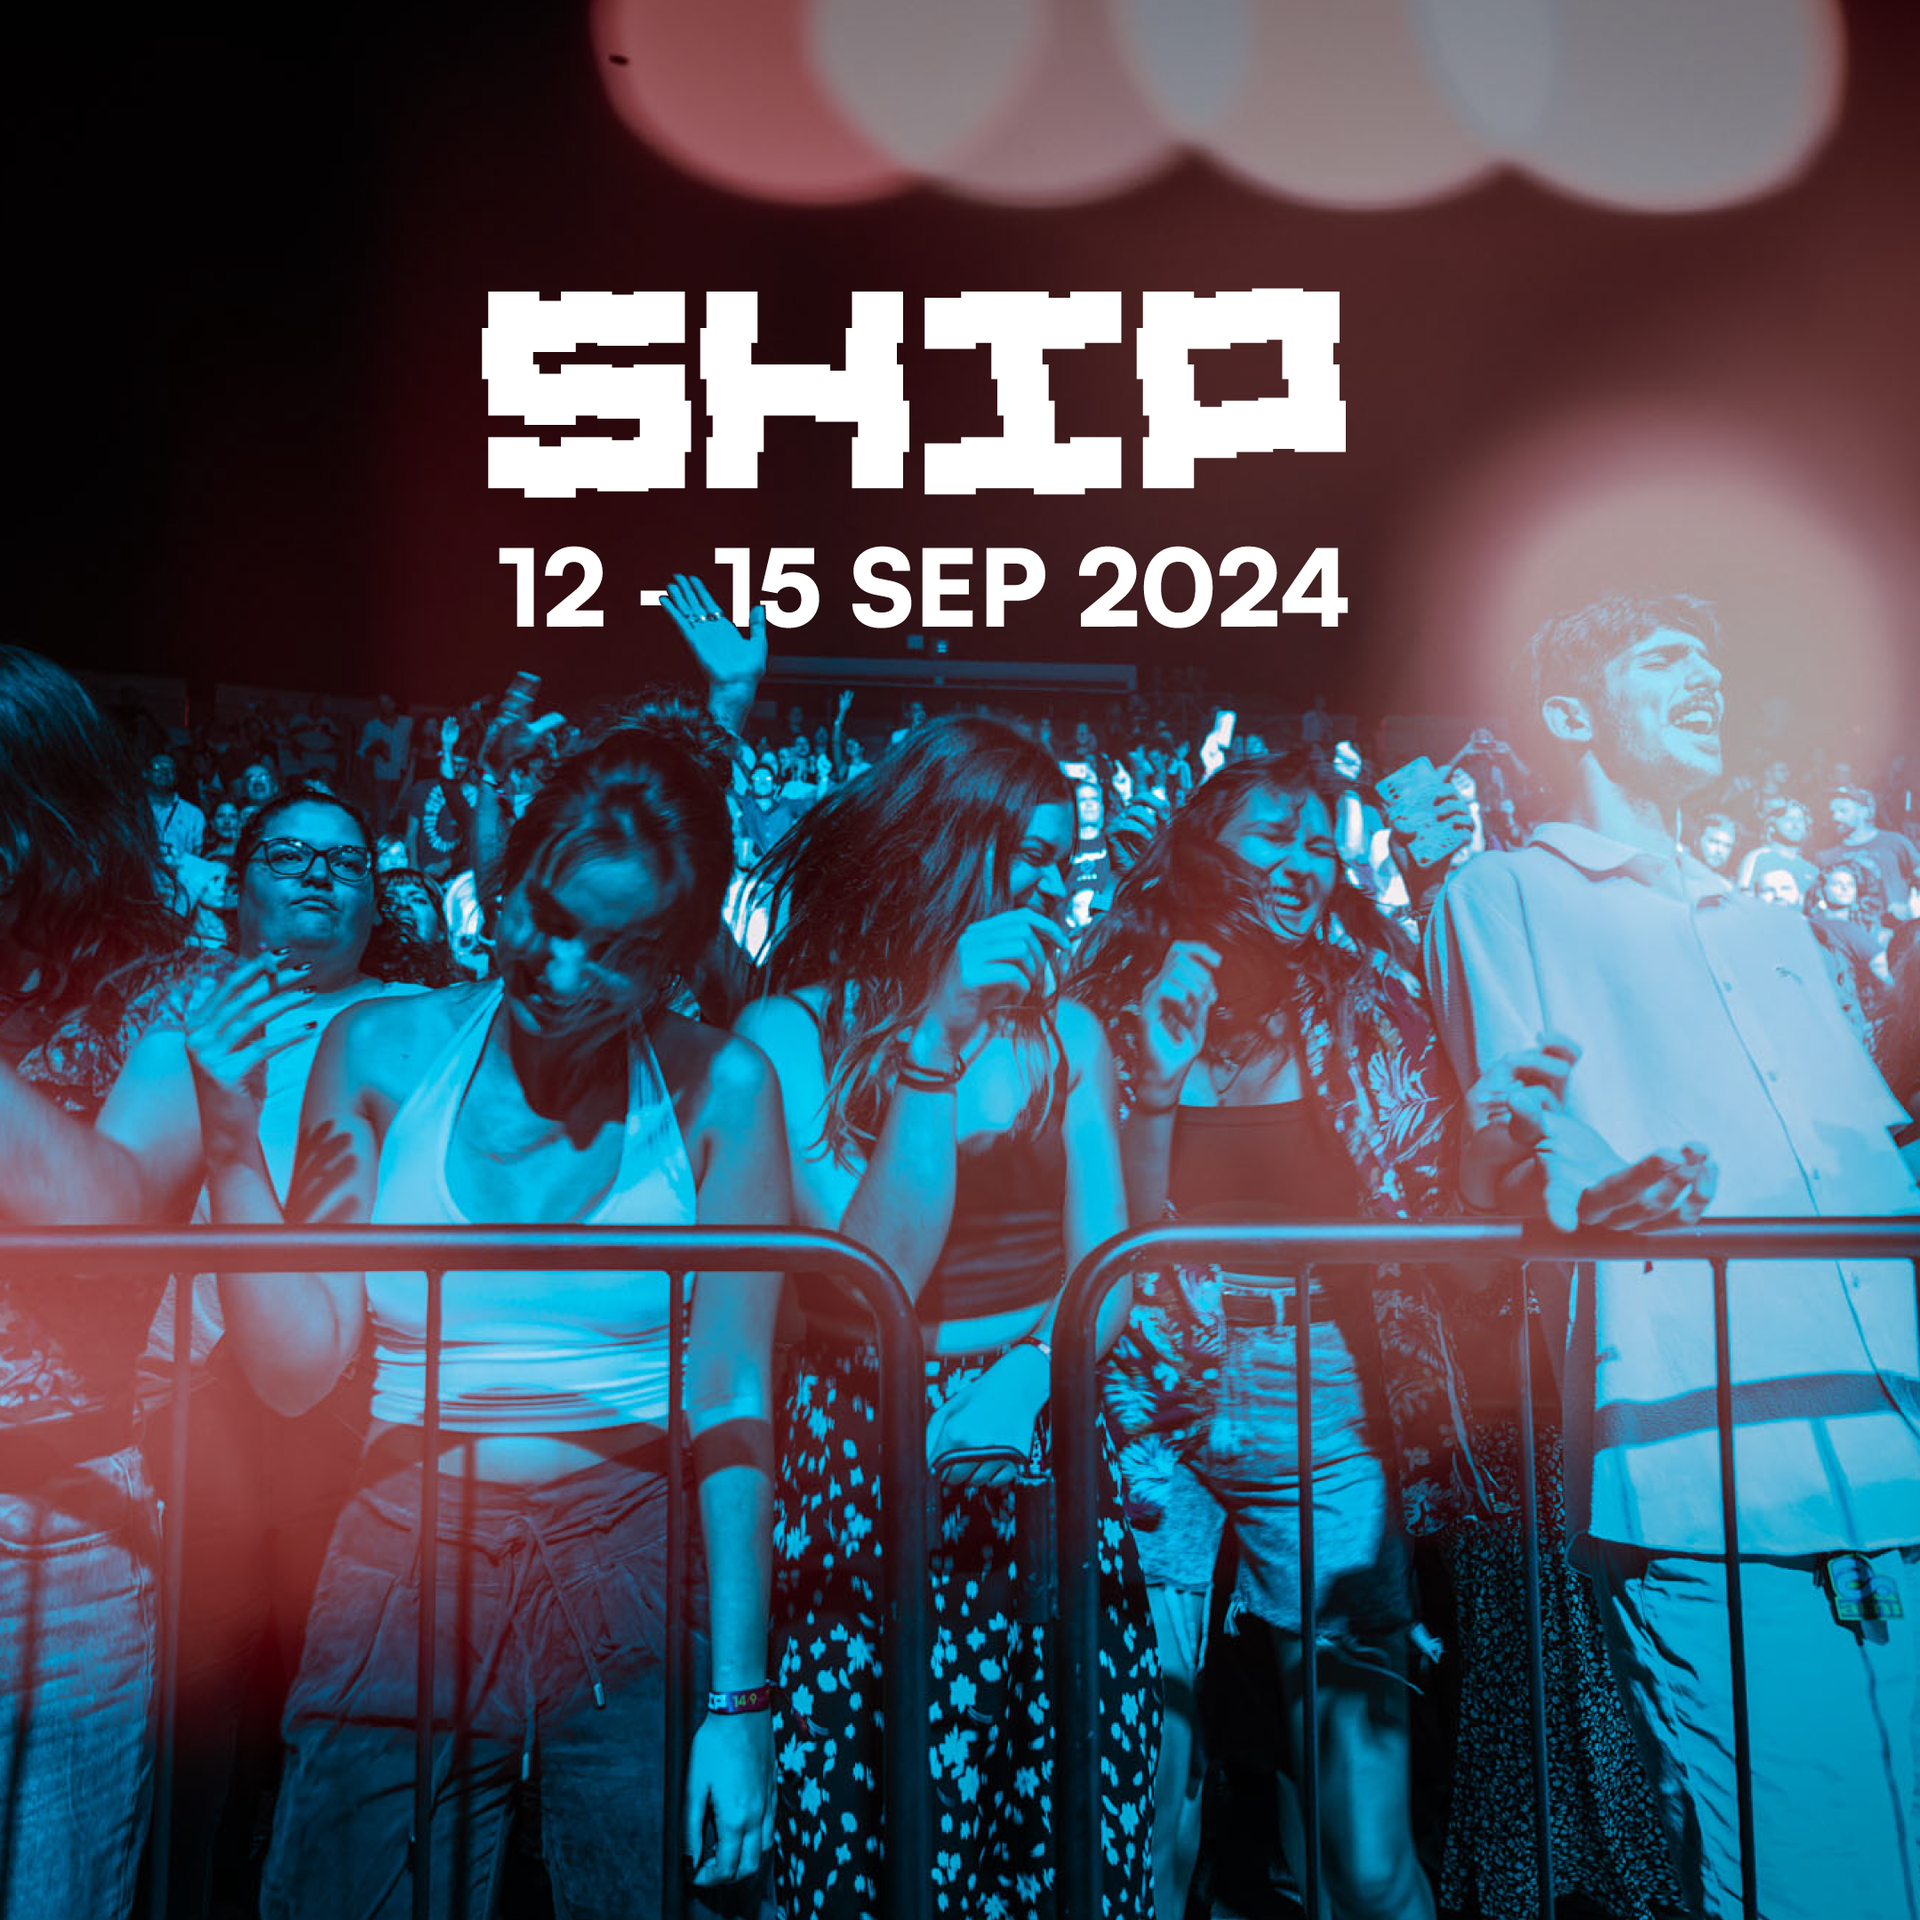 U prodaji su 'blind' ulaznice za SHIP festival 2024. godine